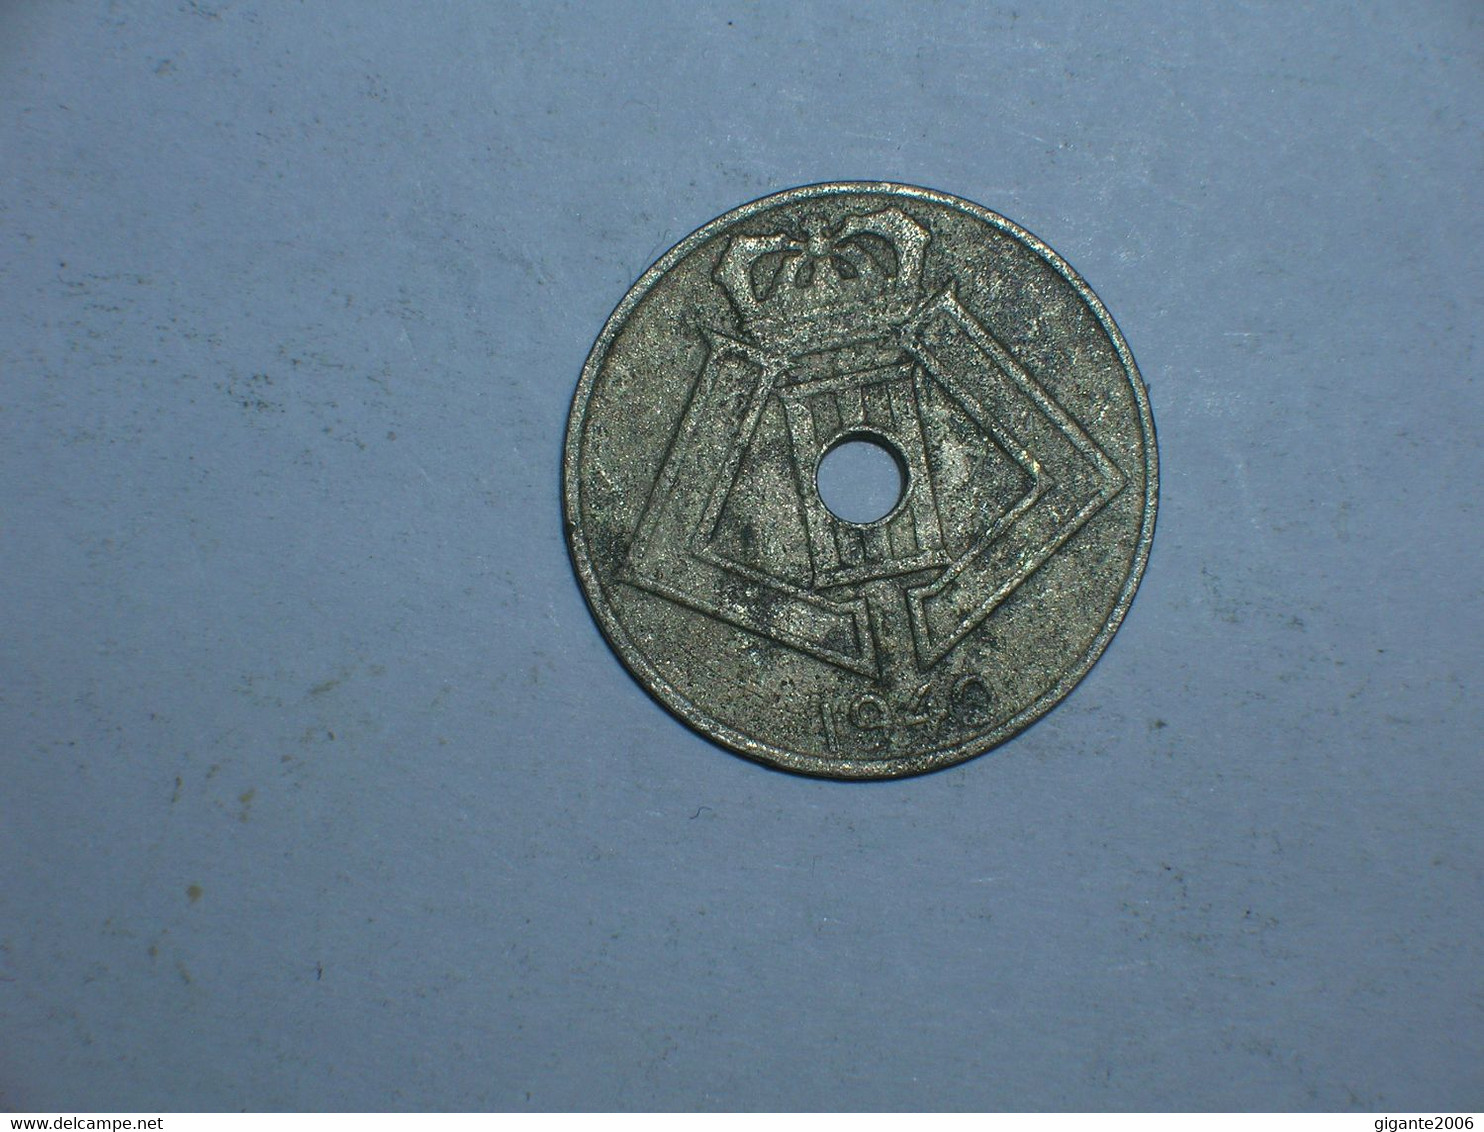 BELGICA 5 CENTIMOS 1940 FL (9120) - 5 Centesimi